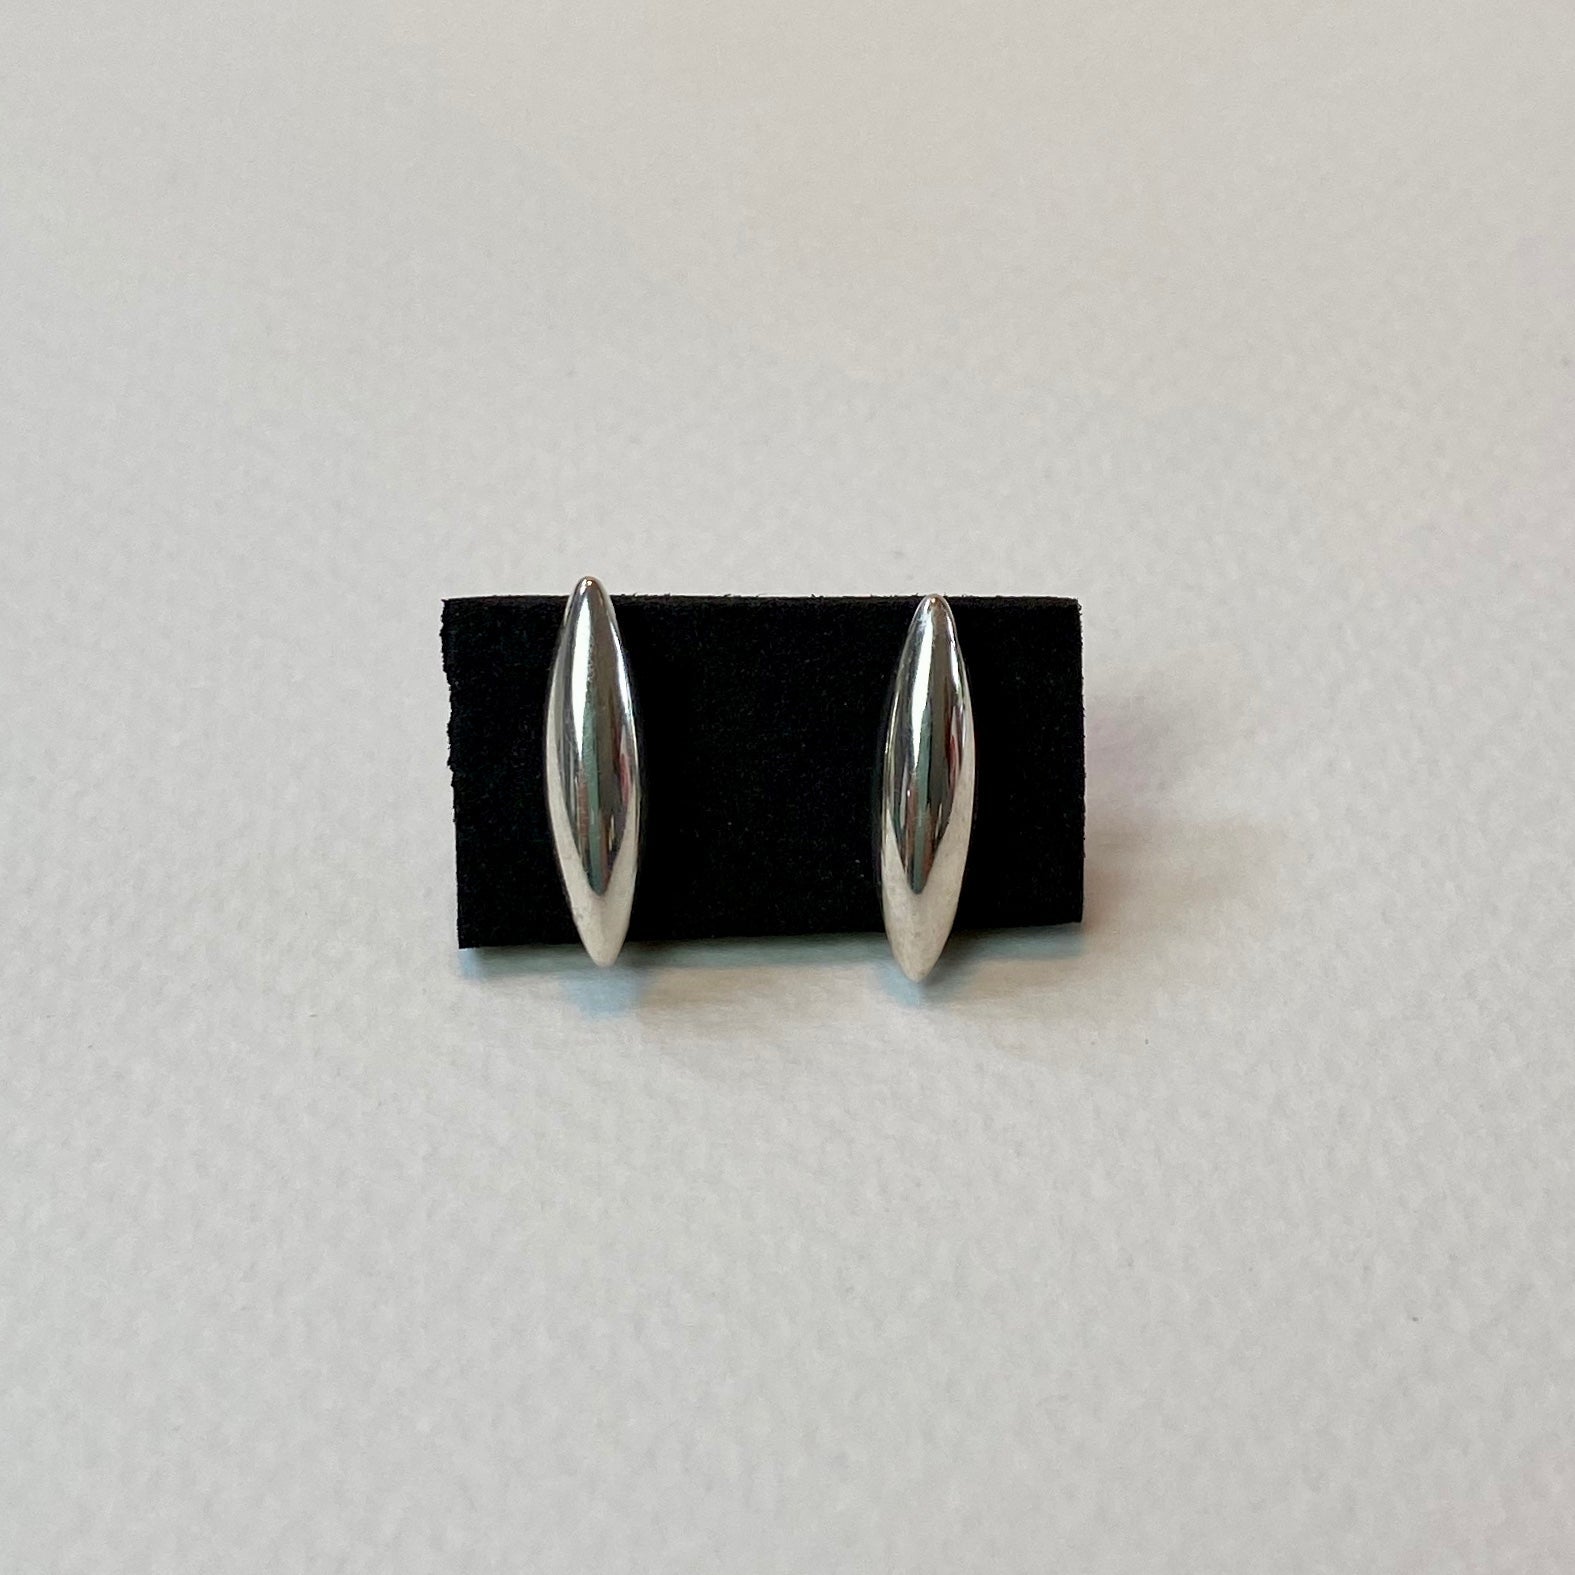 Silver Stud Earrings - The Nancy Smillie Shop - Art, Jewellery & Designer Gifts Glasgow